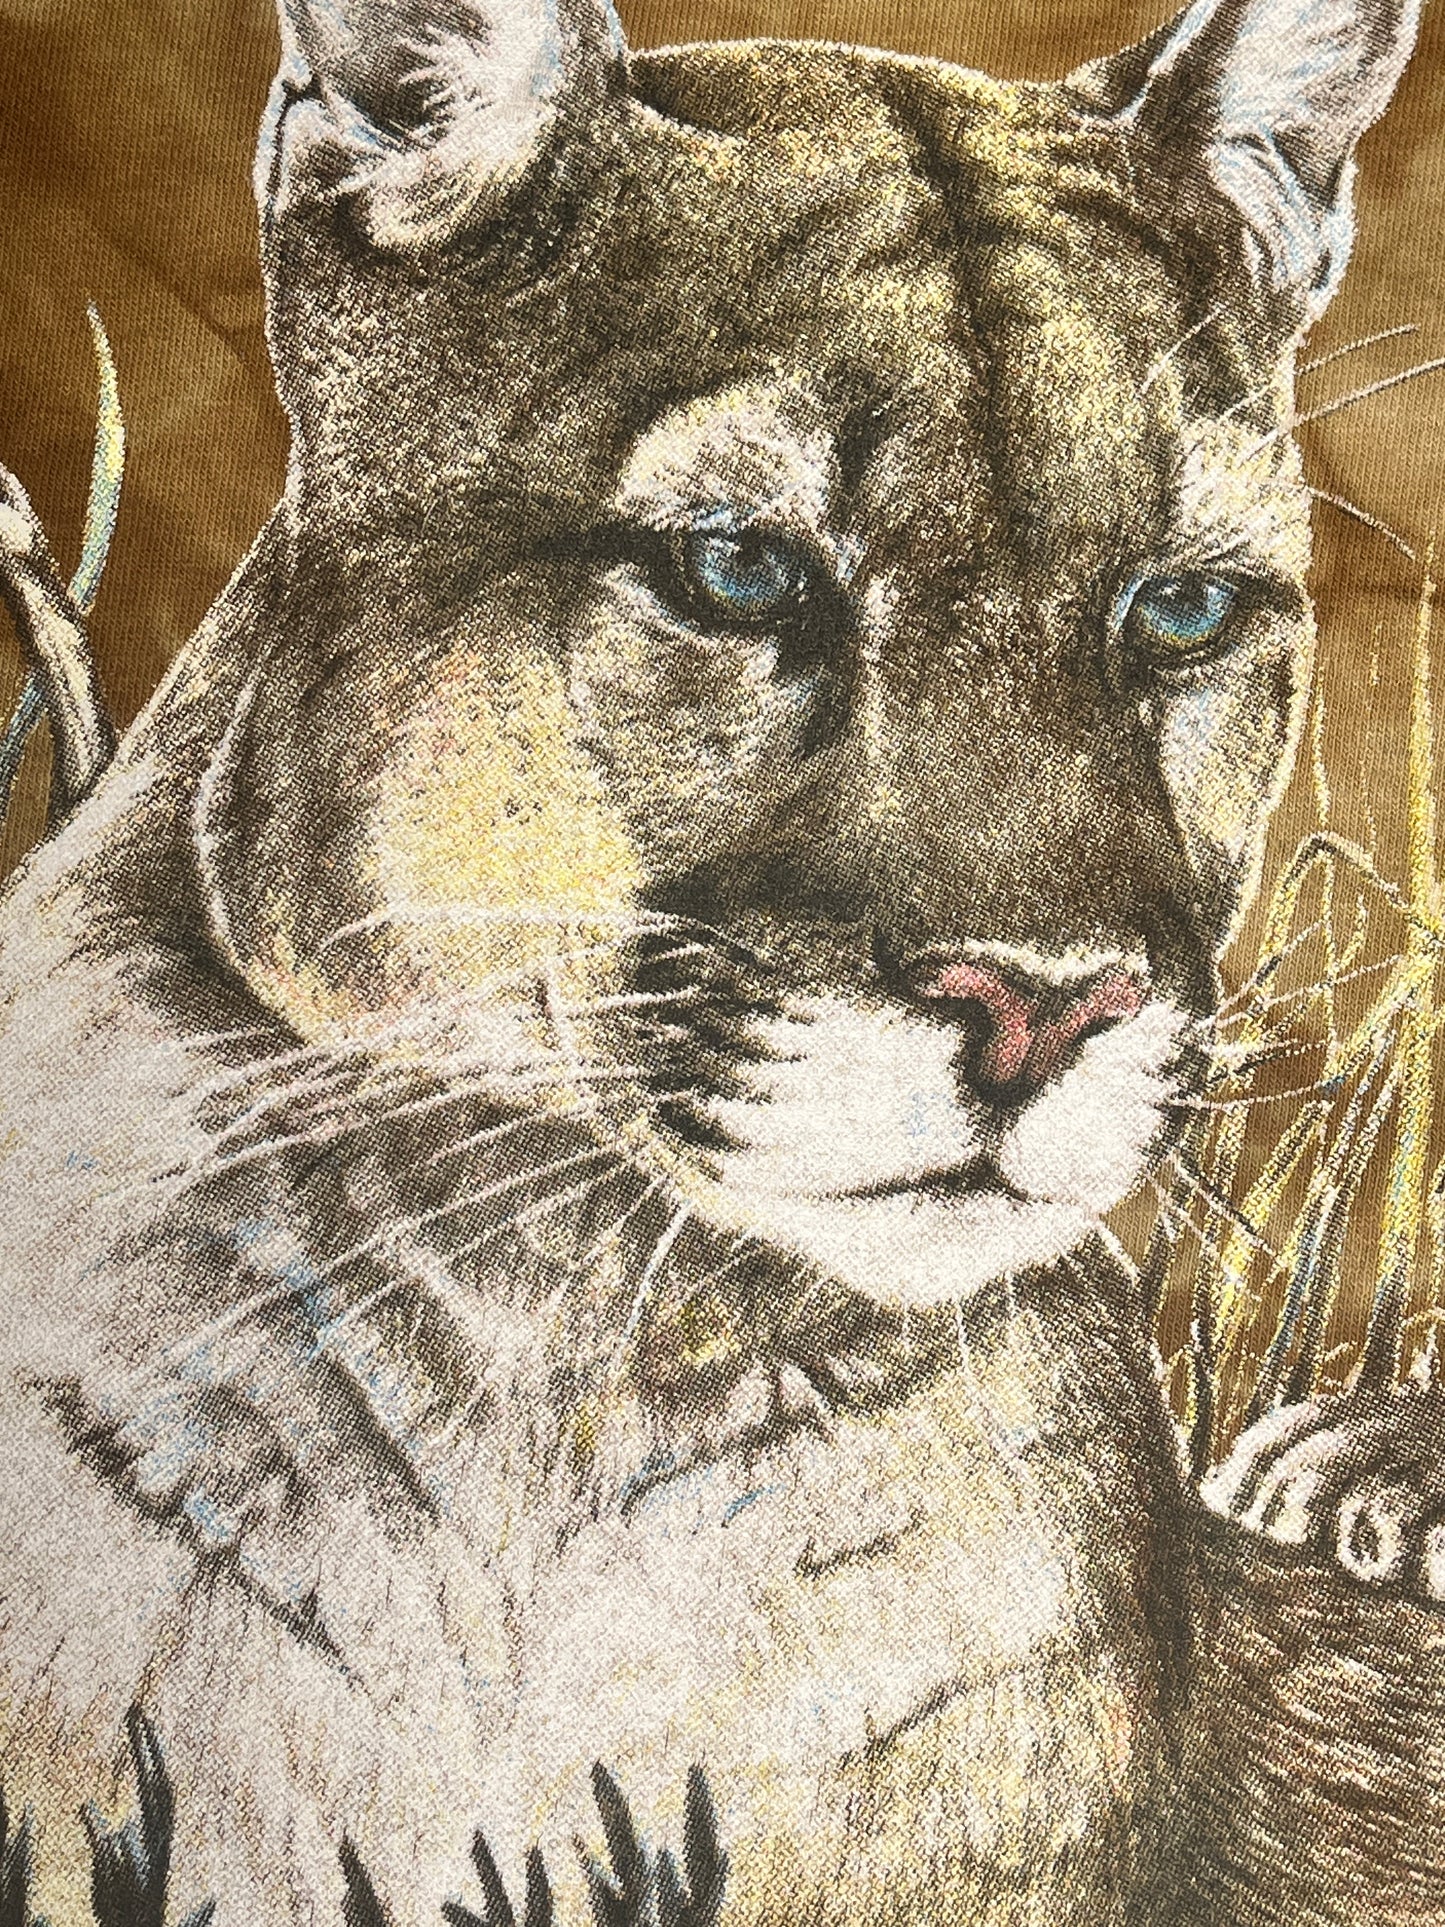 Vintage Cat T-Shirt Mountain Lion Cougar Animal Montana